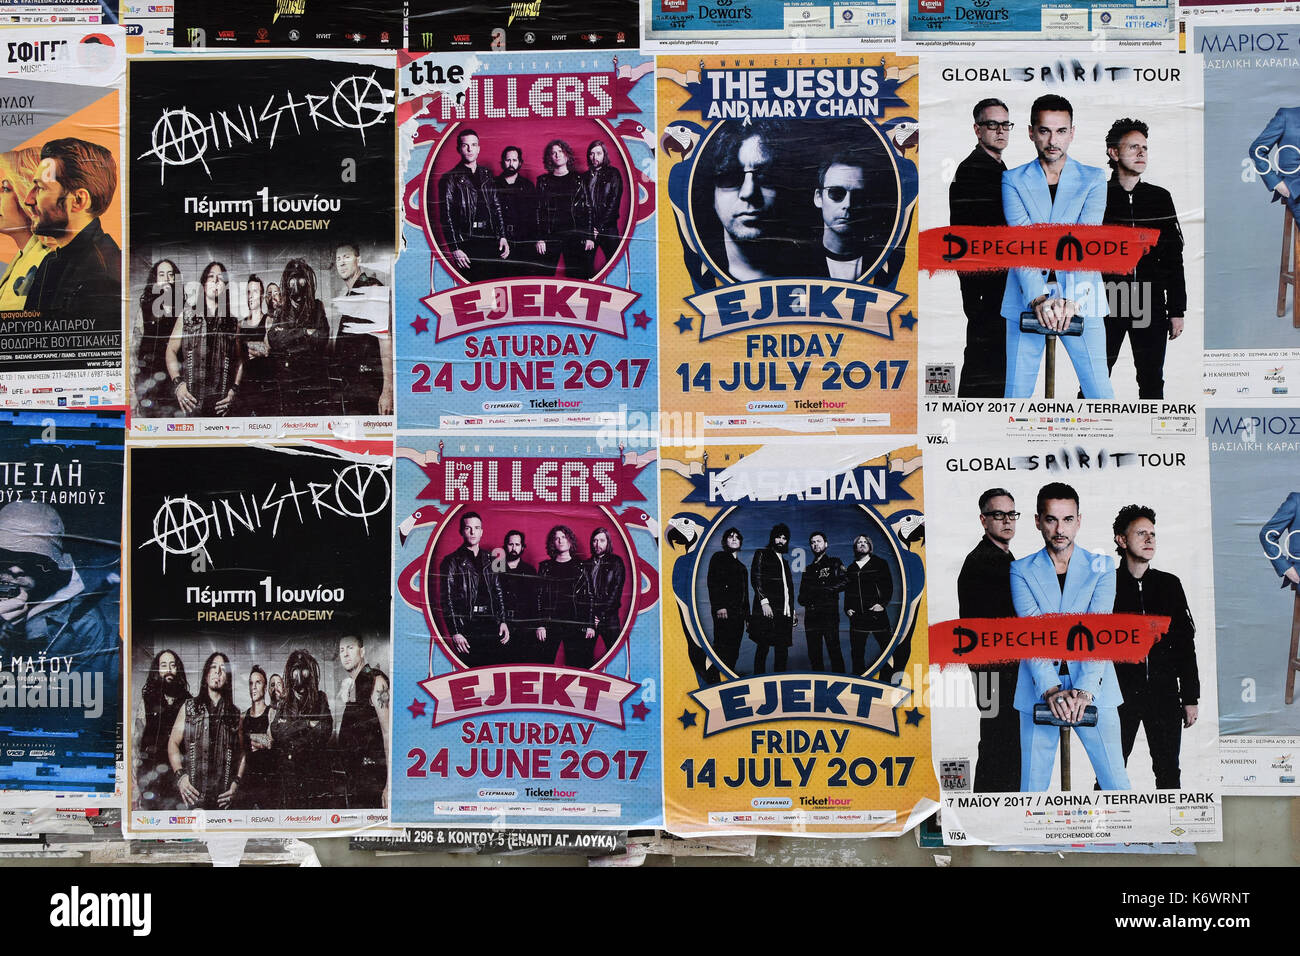 Athen, Griechenland - 24. APRIL 2017: Wand mit concert Poster live Musik von Depeche Mode, Jesus und Maria Kette, Kasabian, The Killers und Ministerium. Stockfoto